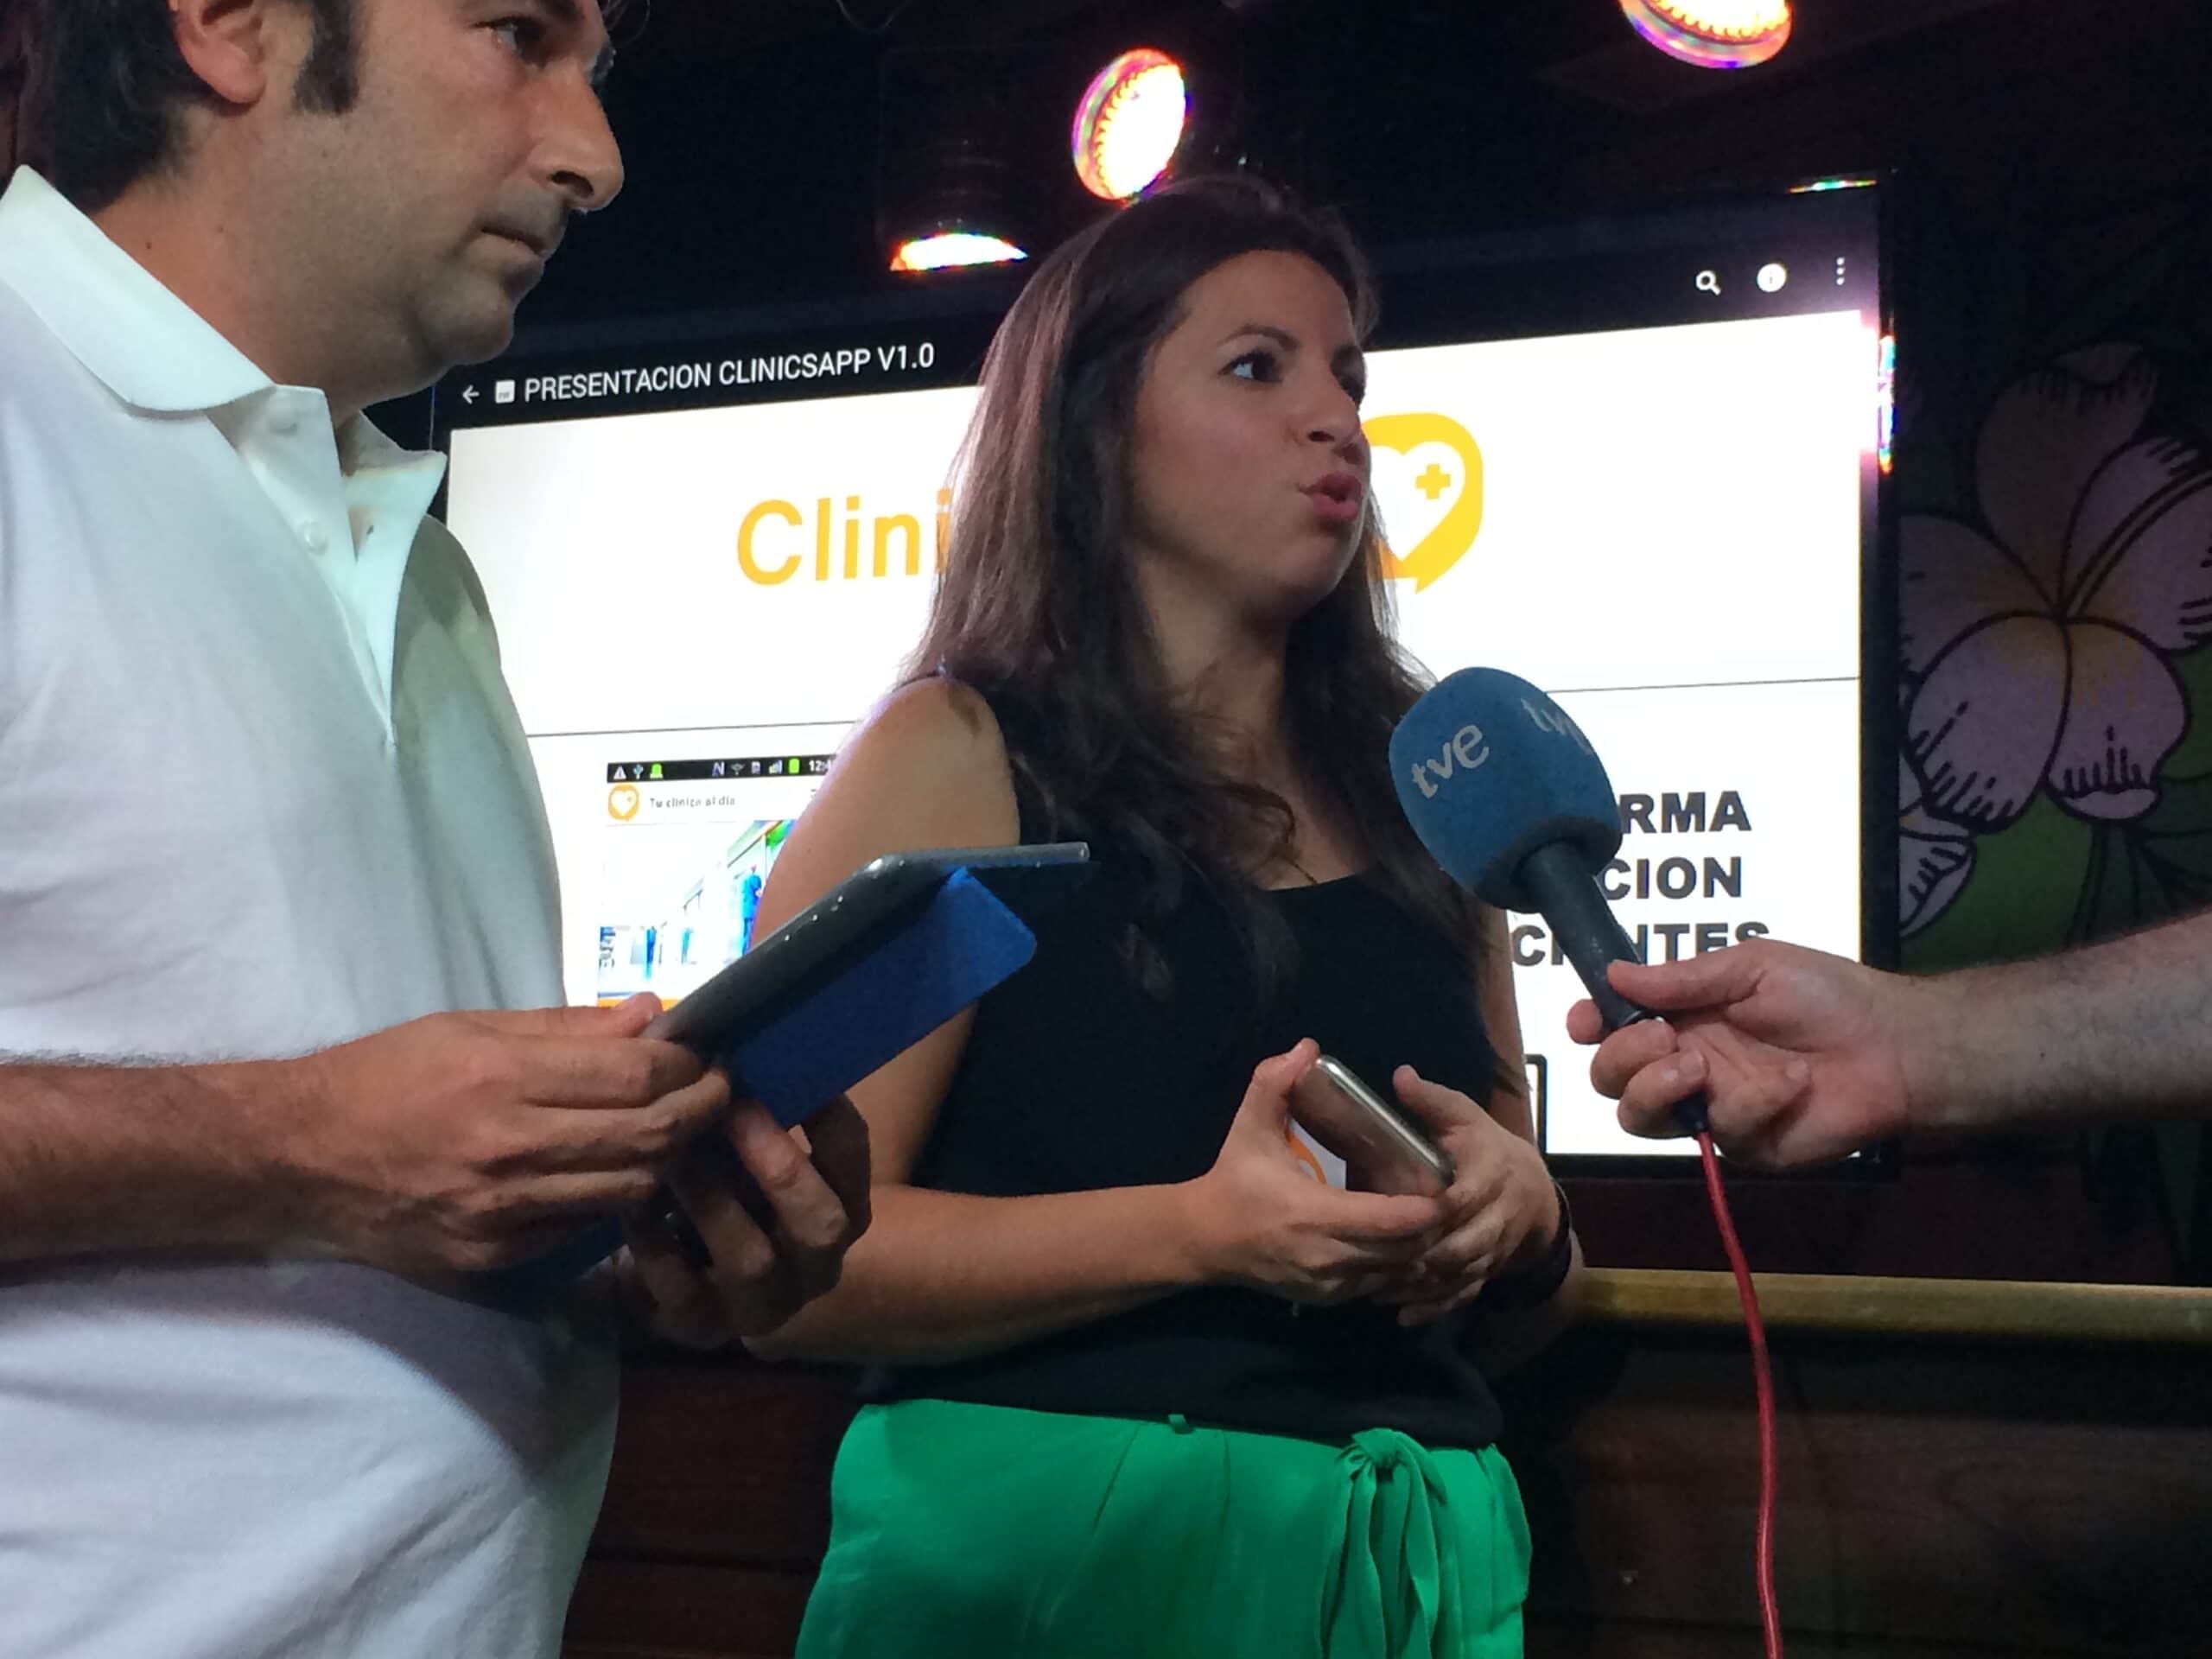 Entrevista TVE a Ginemed en presentación clinicsapp